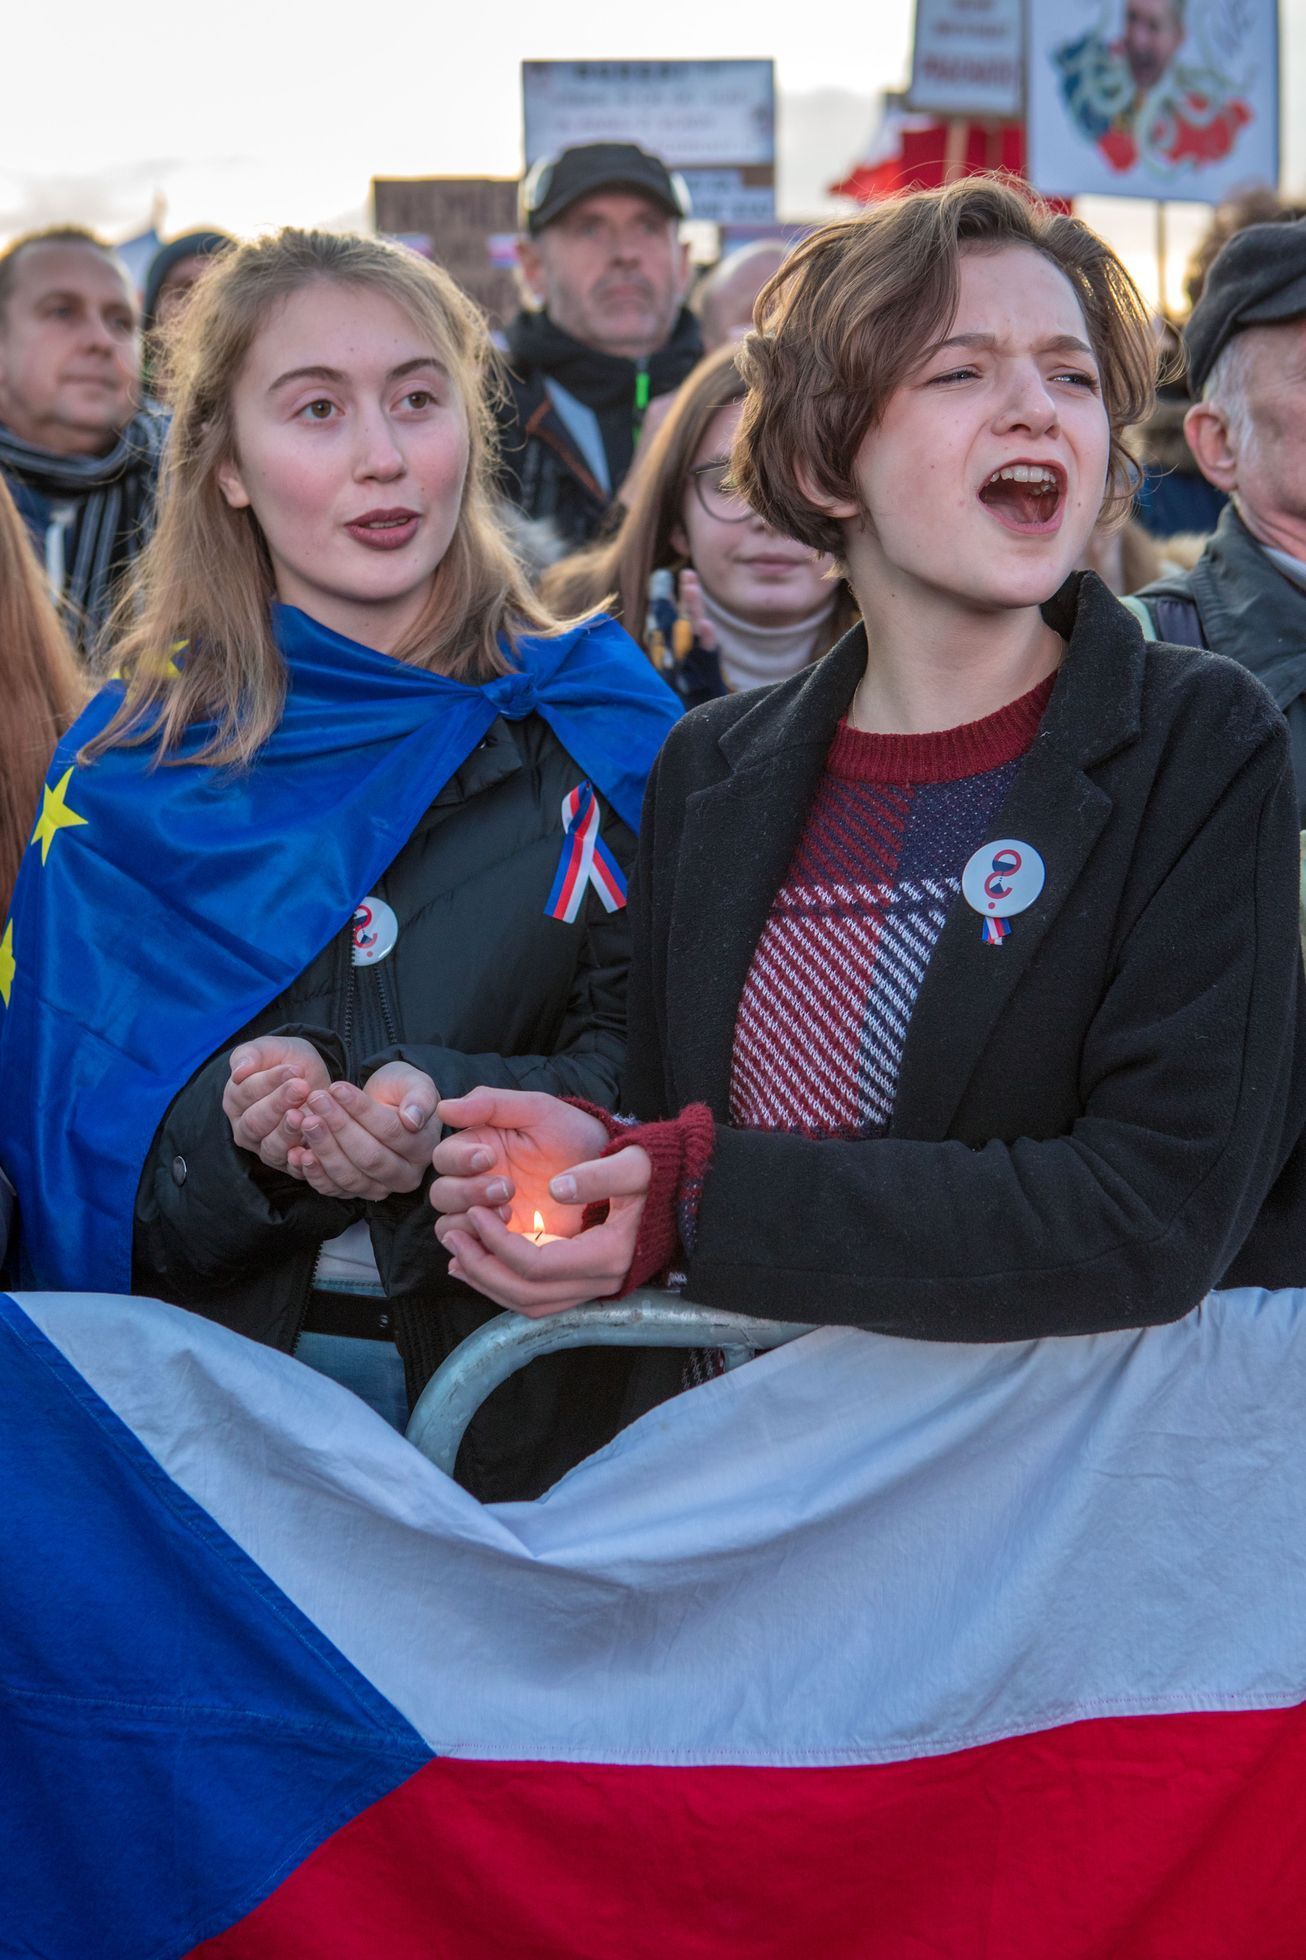 Demonstrace Letná 16. 11. 2019